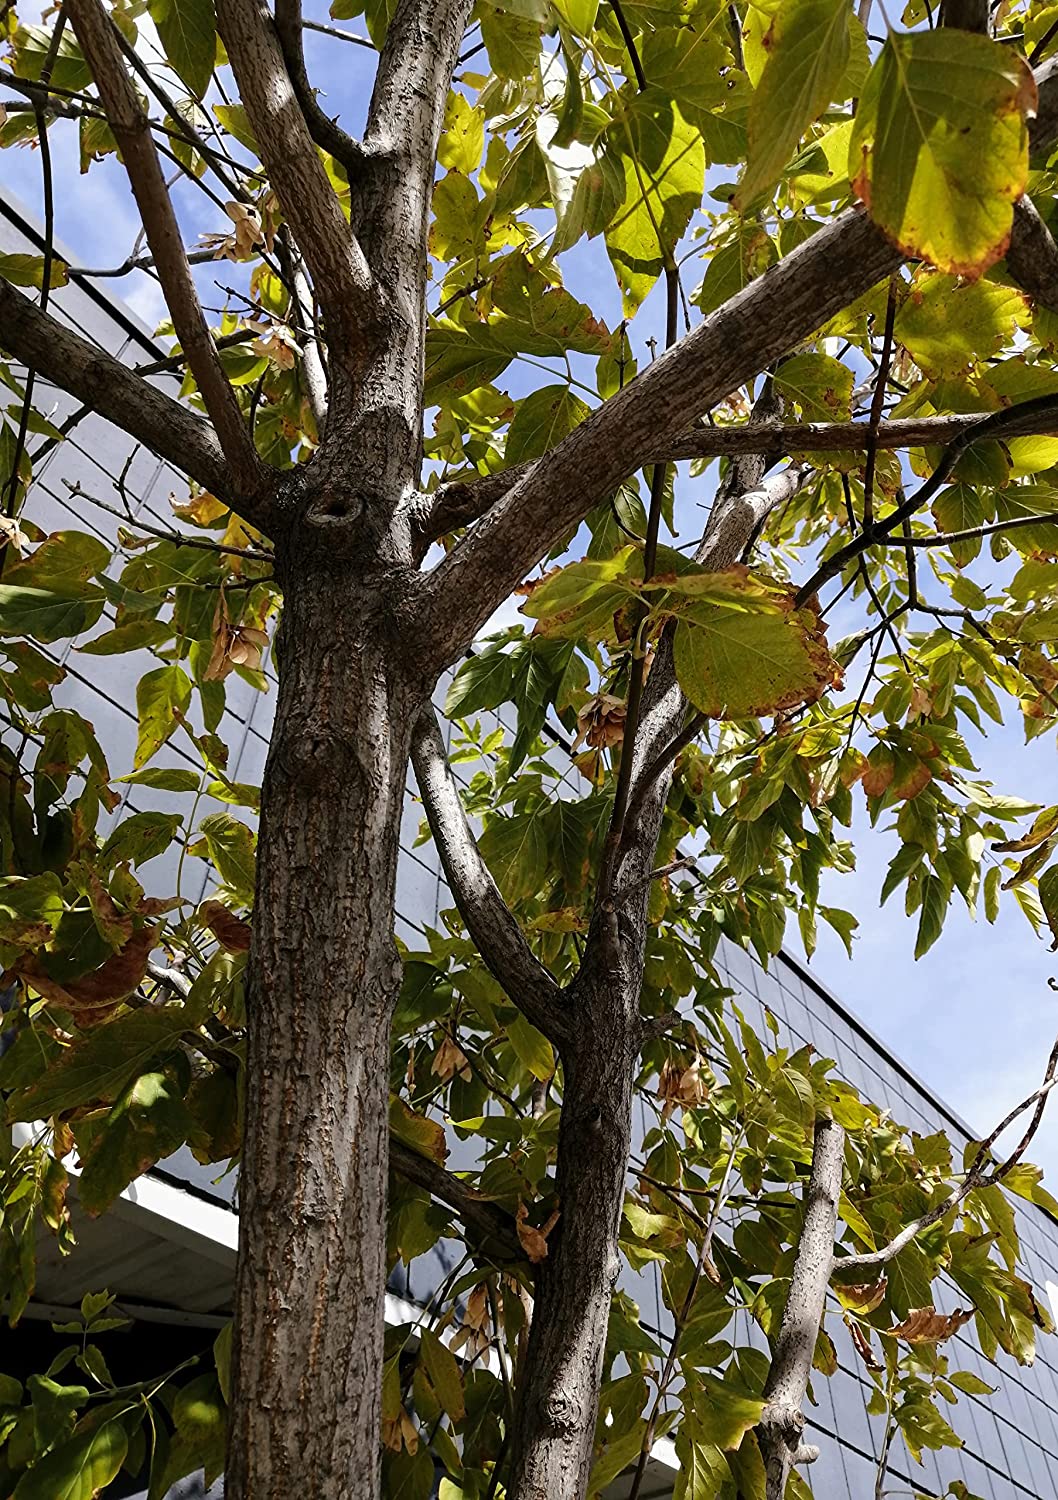 Hundredfold Box Elder Maple 20 Seeds - Acer negundo Ash-leaved Maple, Ashleaf Maple, Red River Maple Manitoba Maple Canada Native Tree